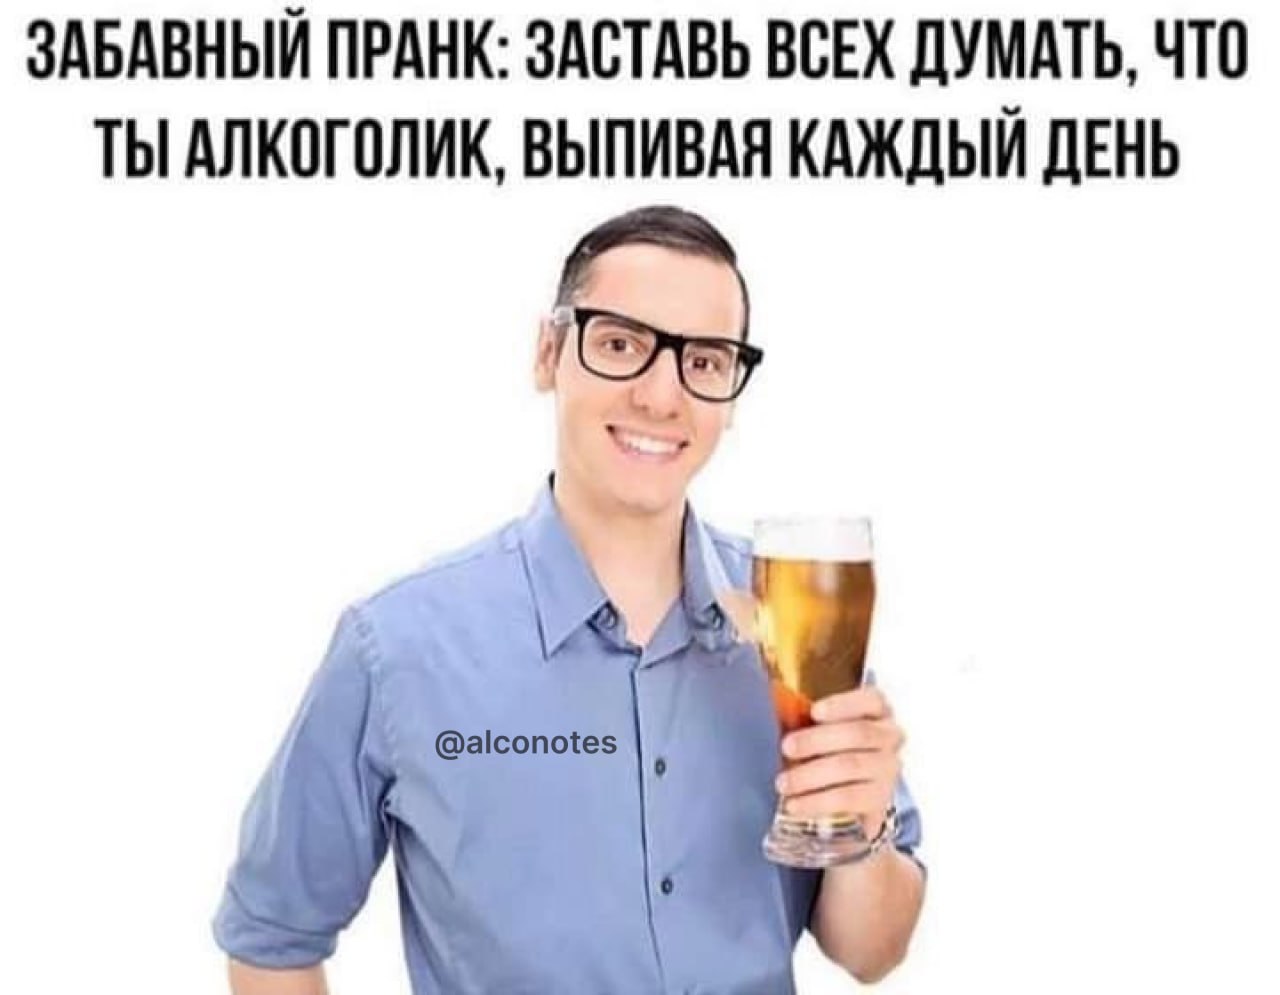 Каждый день пьют алкоголики